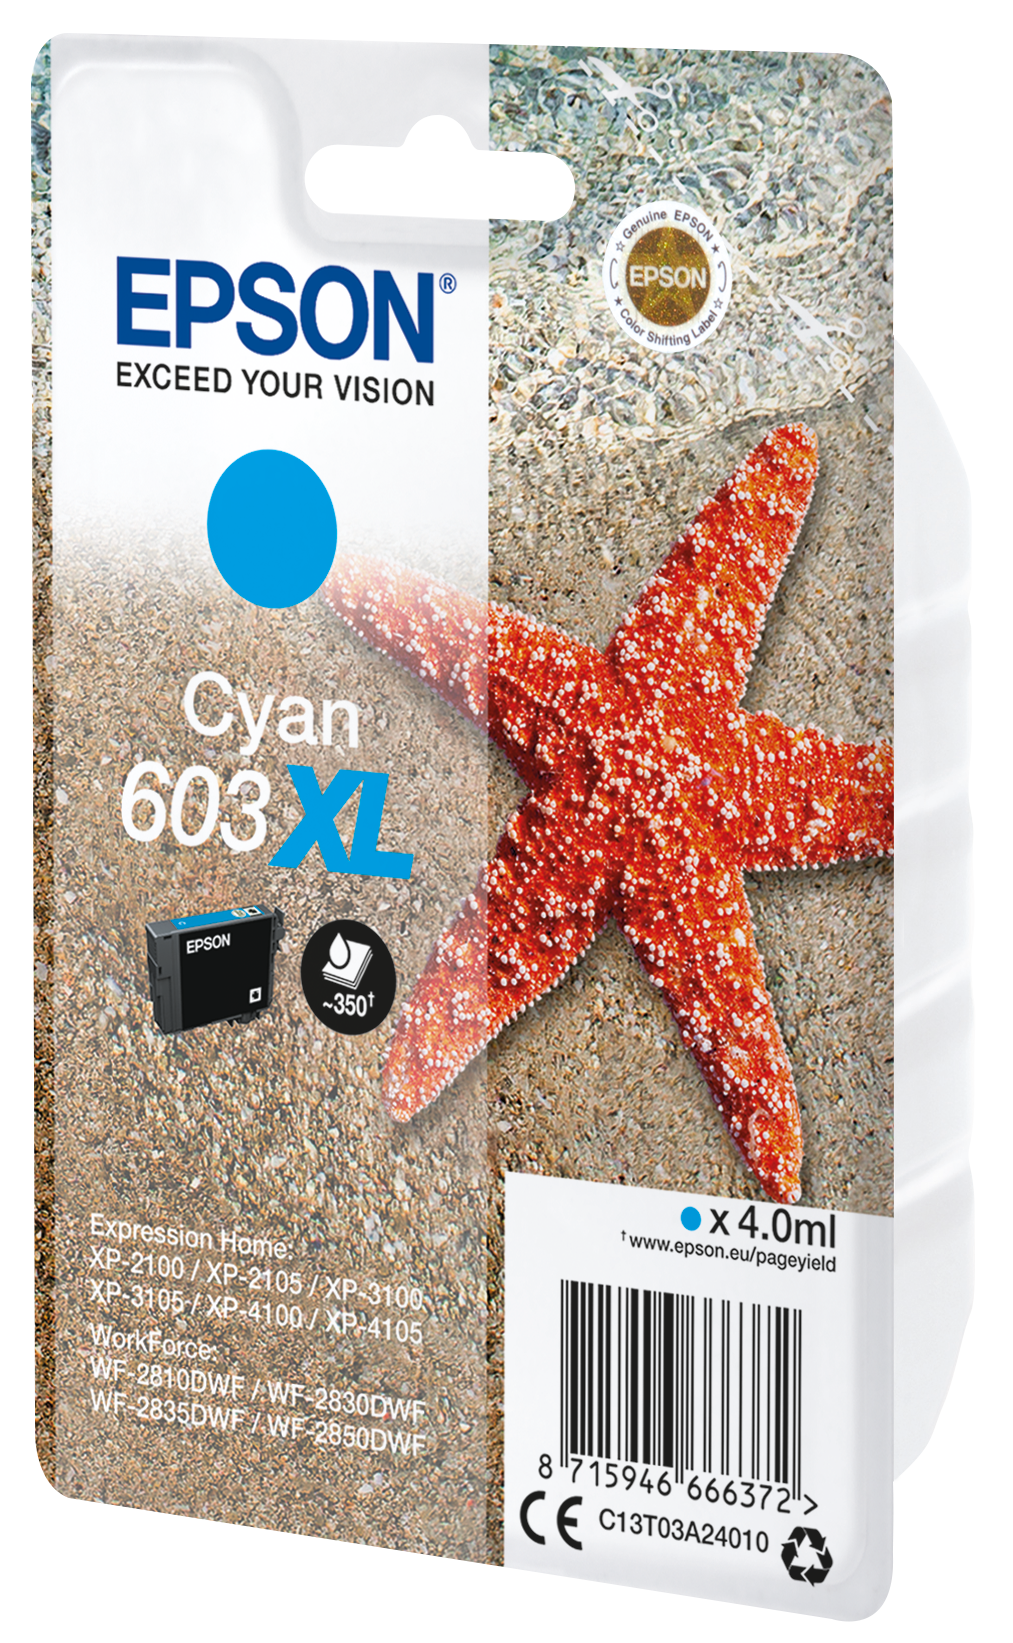 Cartouche d'encre Epson 603 Étoile de Mer - Couleurs au meilleur prix